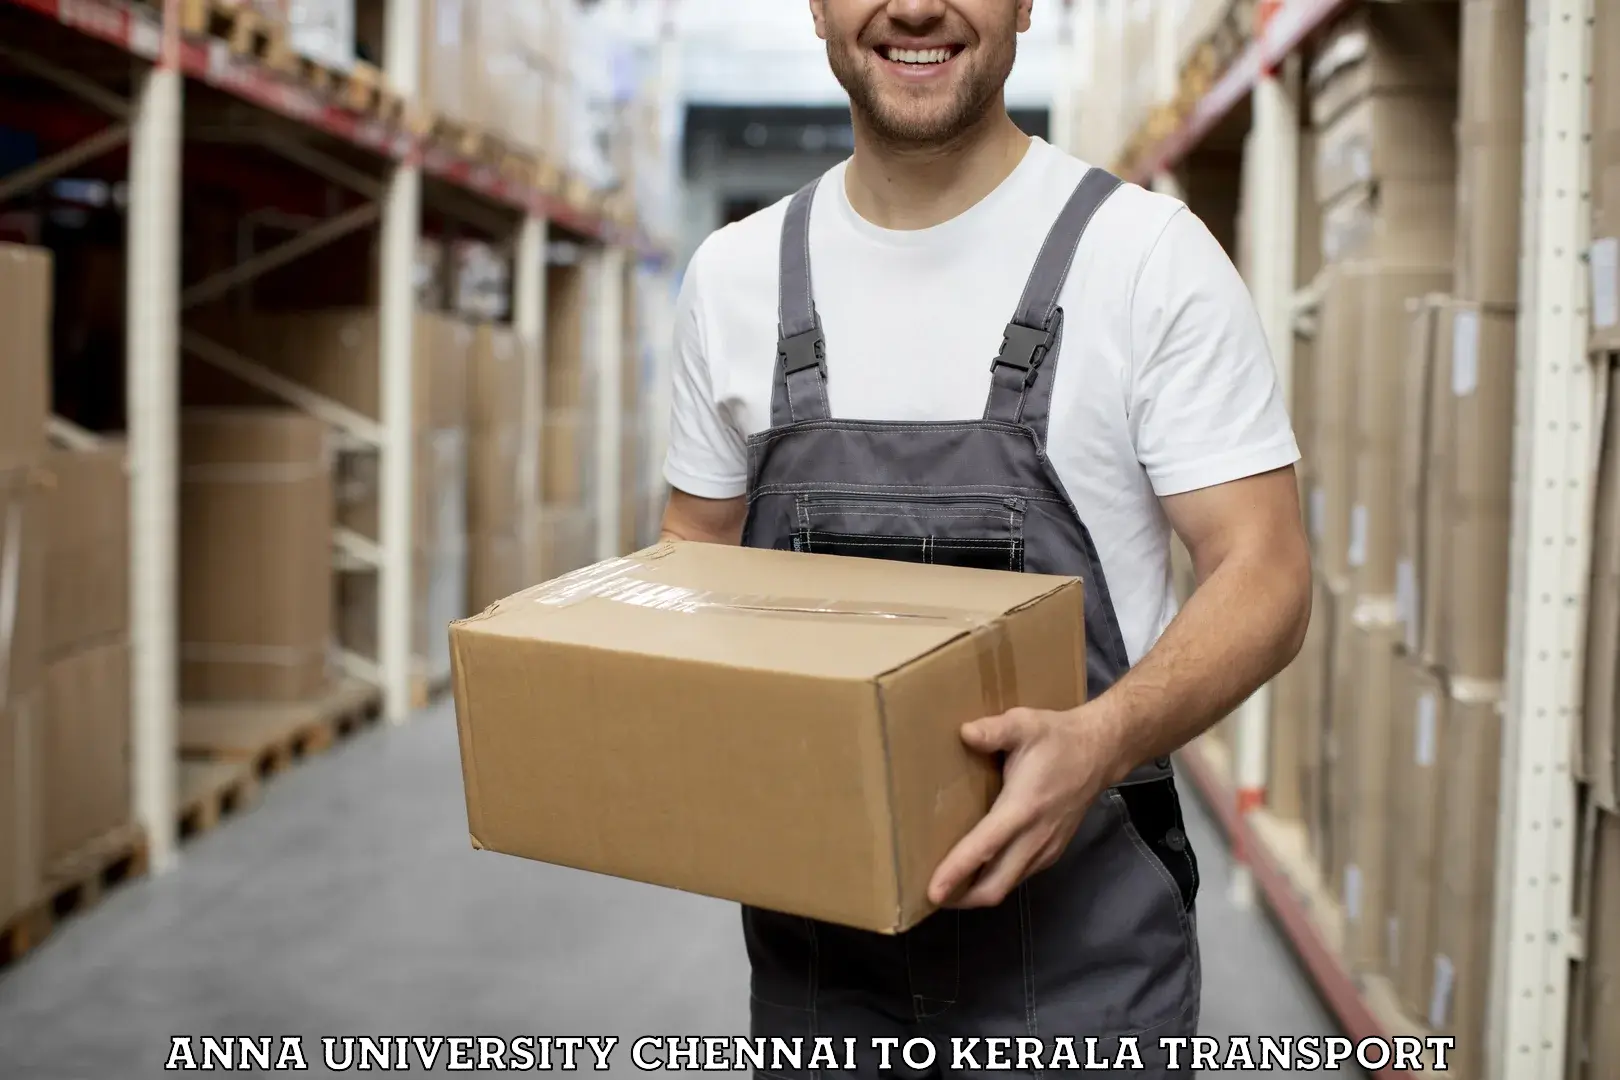 Delivery service Anna University Chennai to Kozhencherry